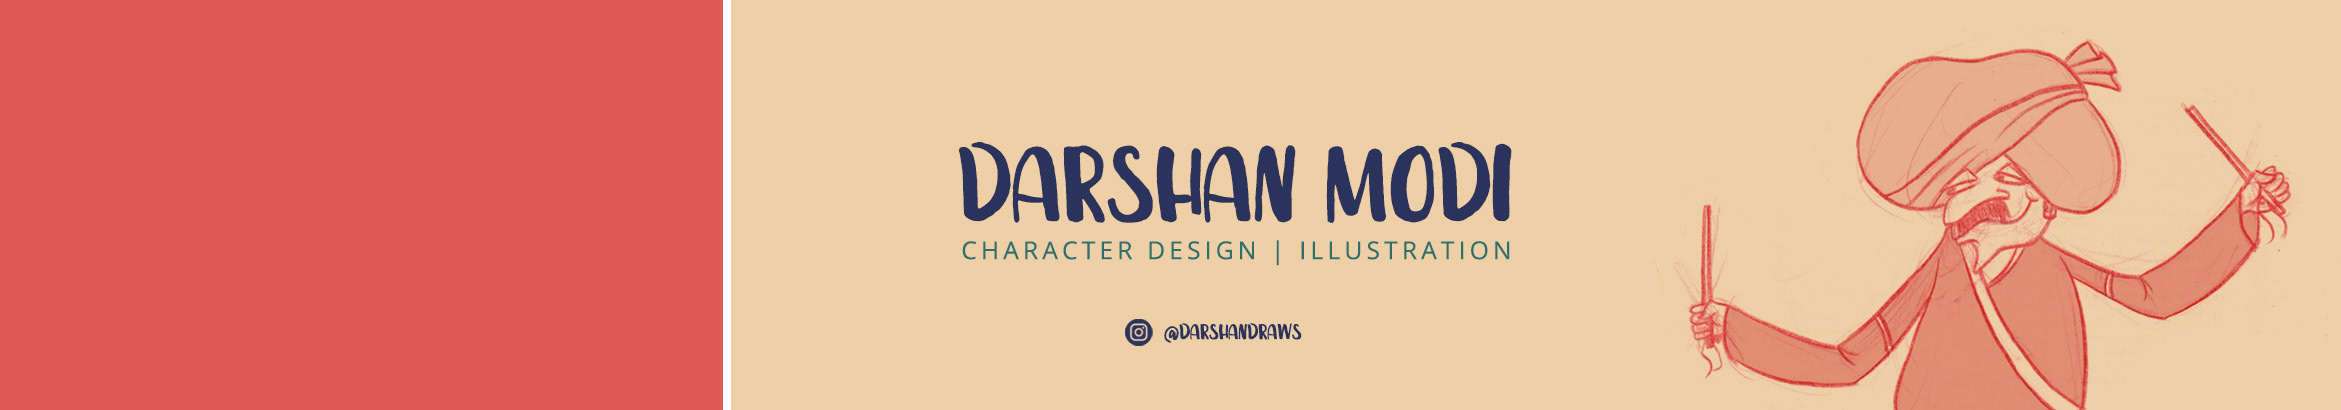 Darshan Modi's profile banner